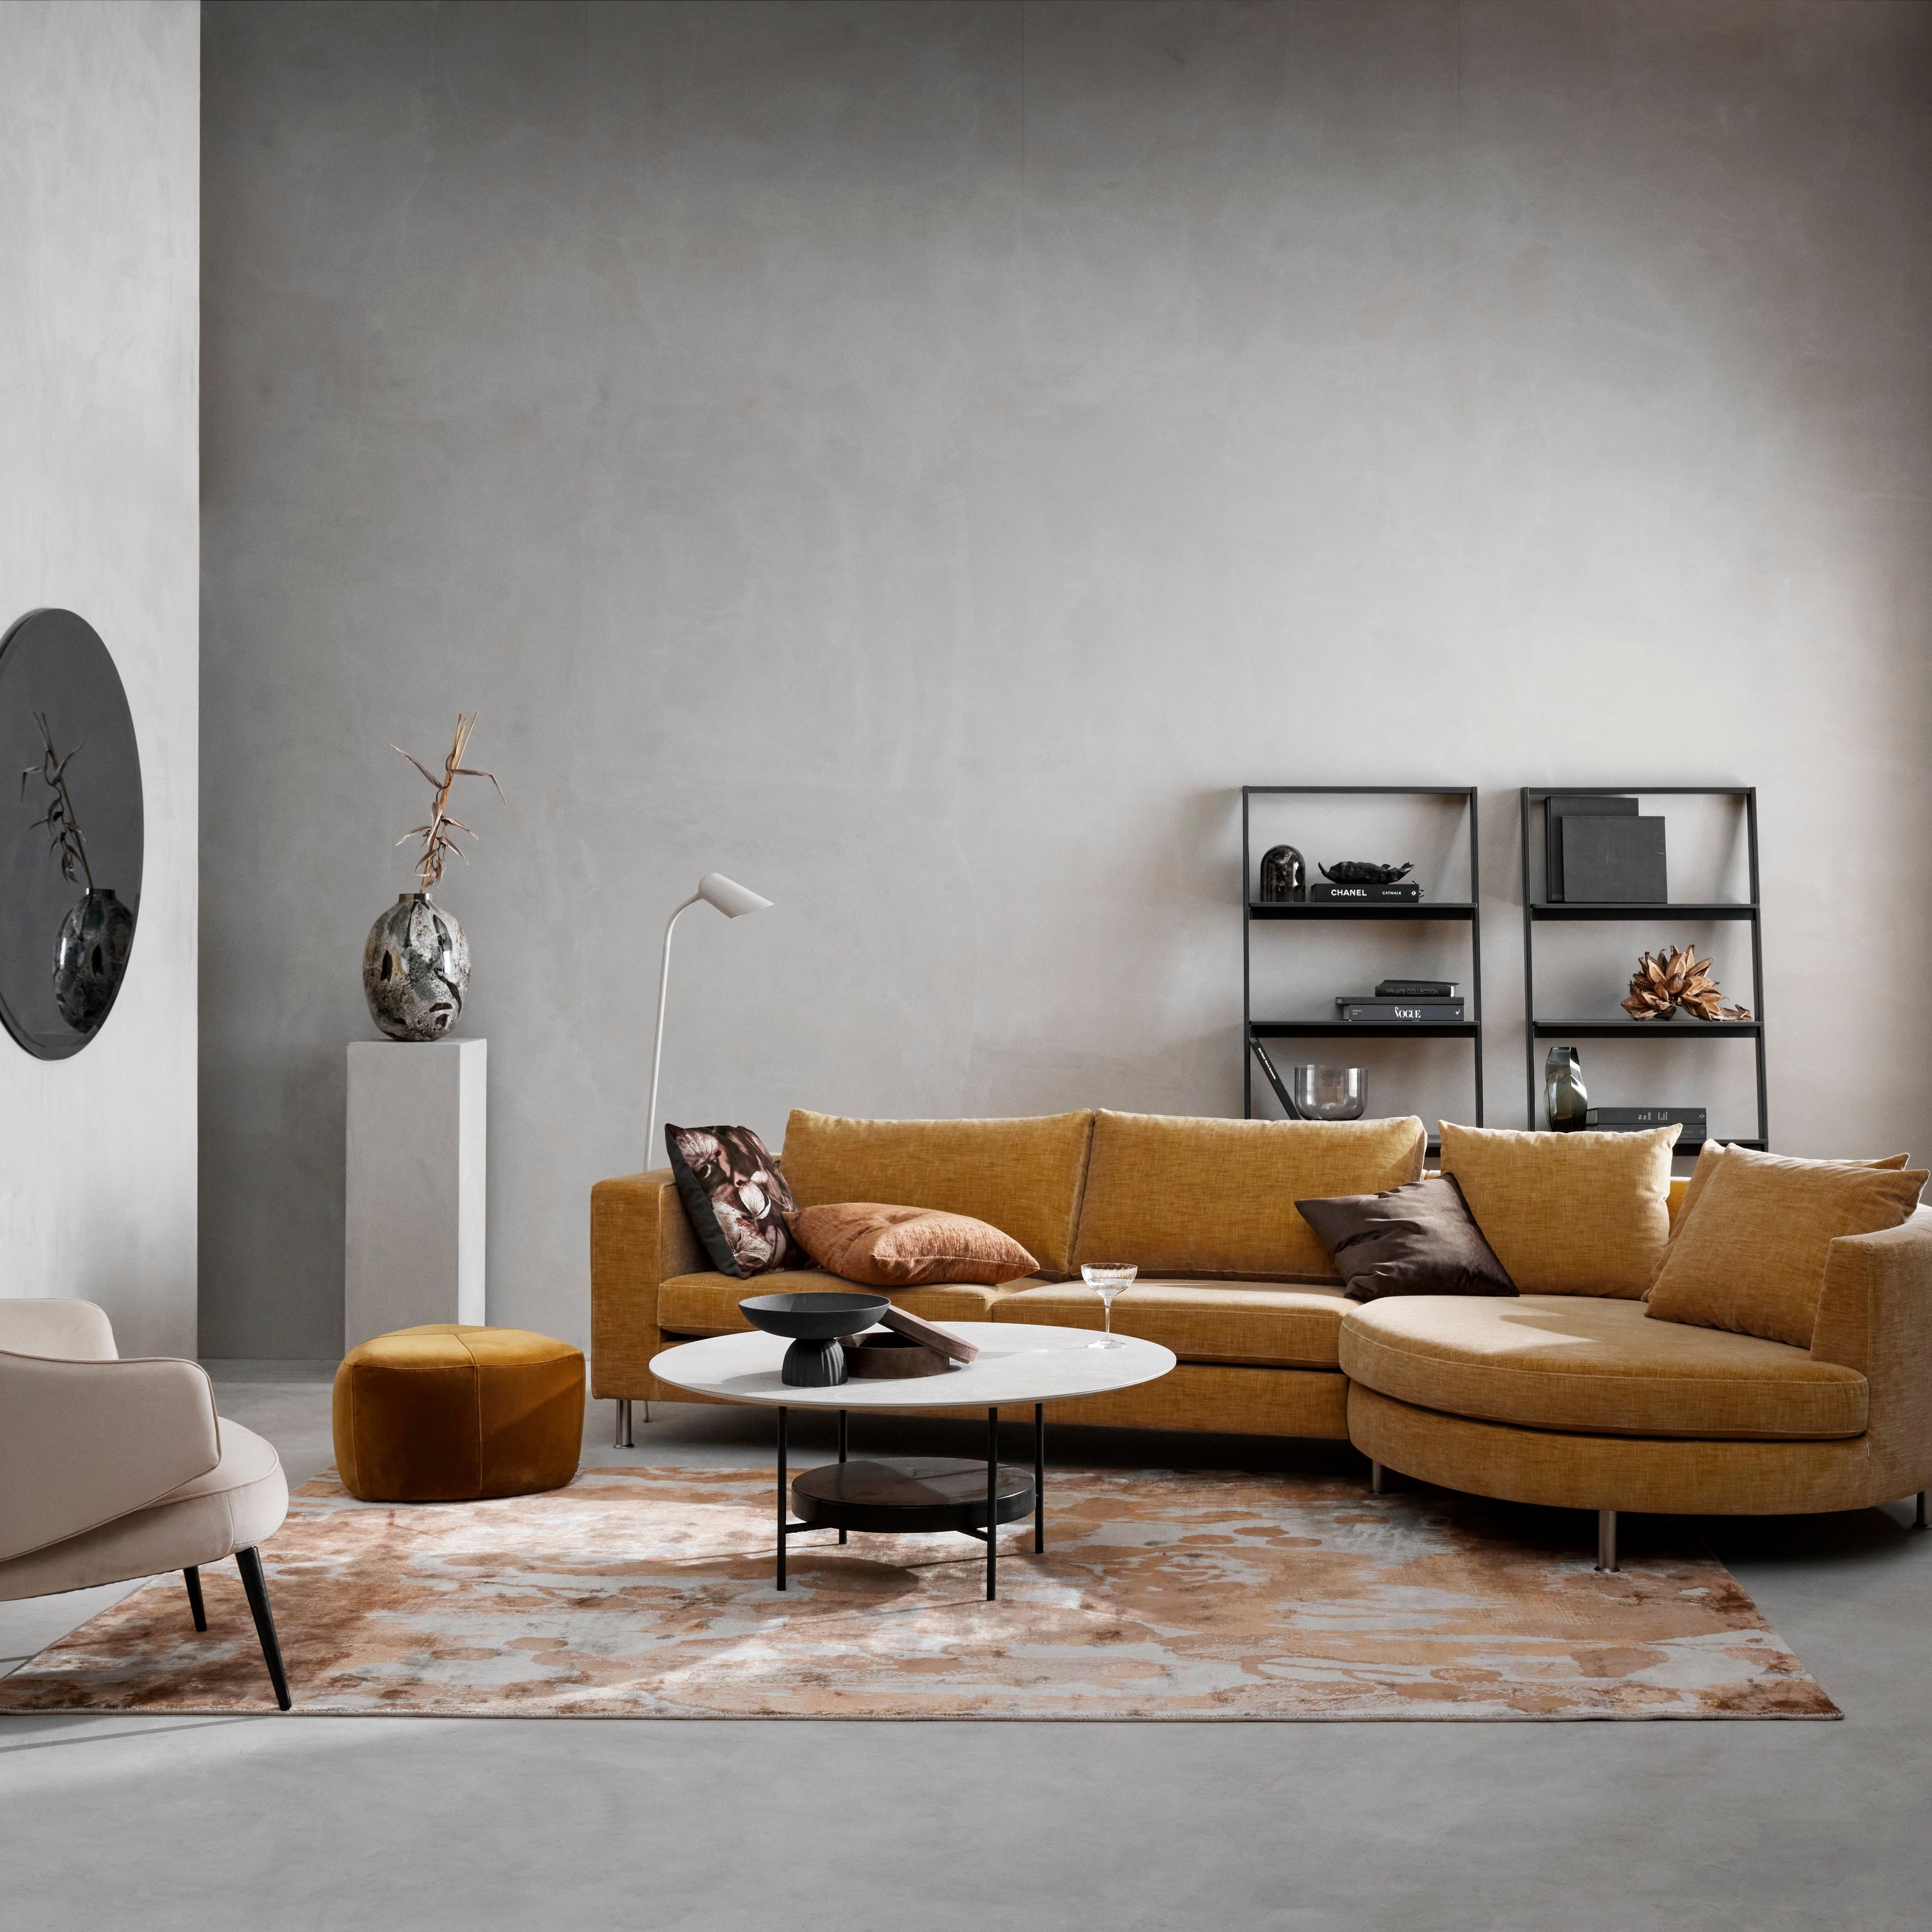 Современная гостиная с горчичным модульным диваном, бежевым креслом, ковром с узором и минималистичным декором.